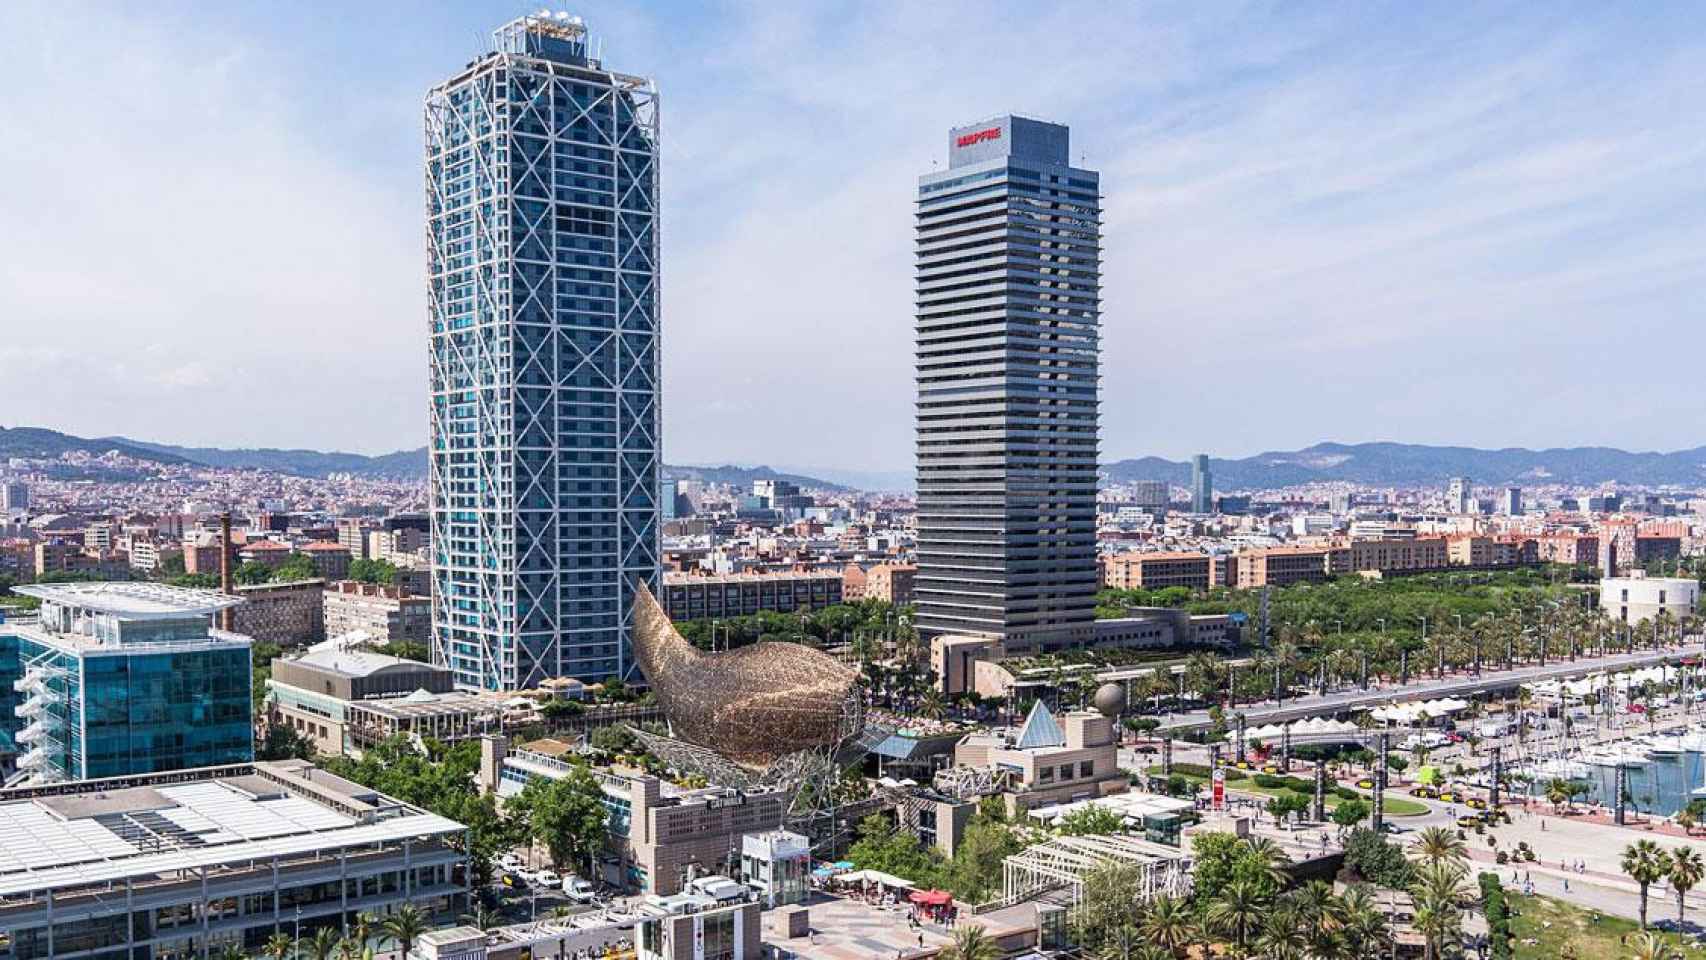 Imagen del Hotel Arts (a la izquierda de la imagen), en el Frente Marítimo de Barcelona / CG